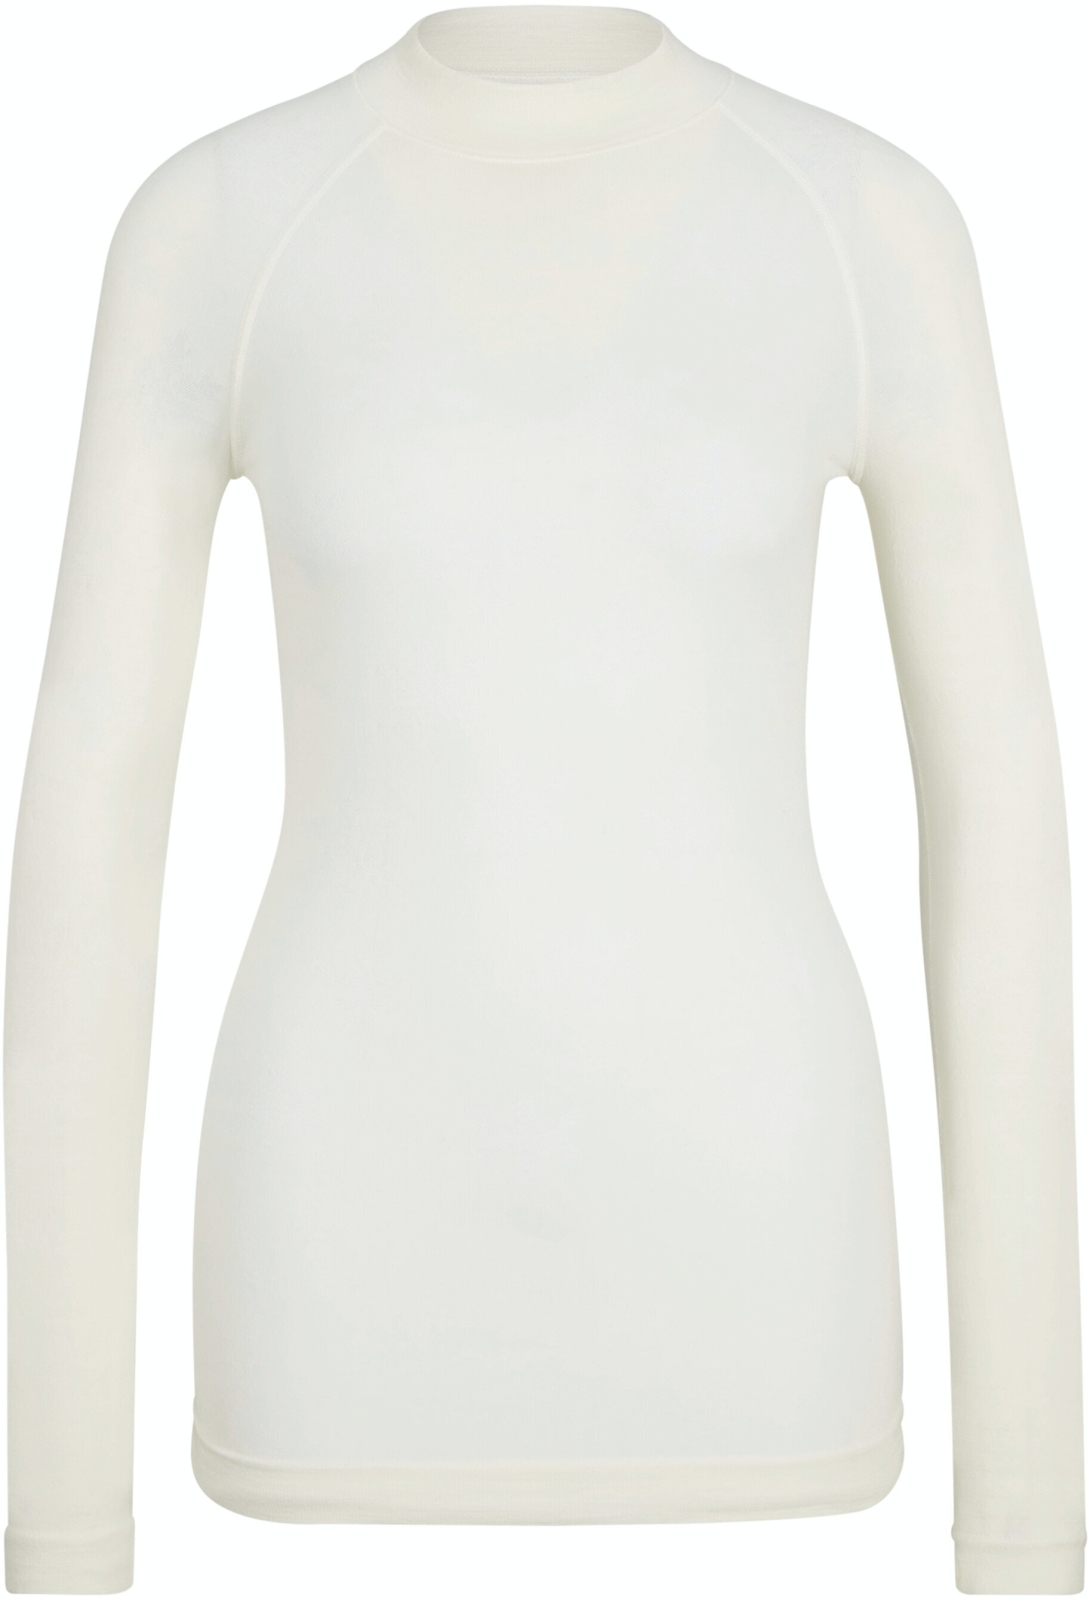 E-shop Falke Women long sleeve Shirt Wool-Tech - off-white XS